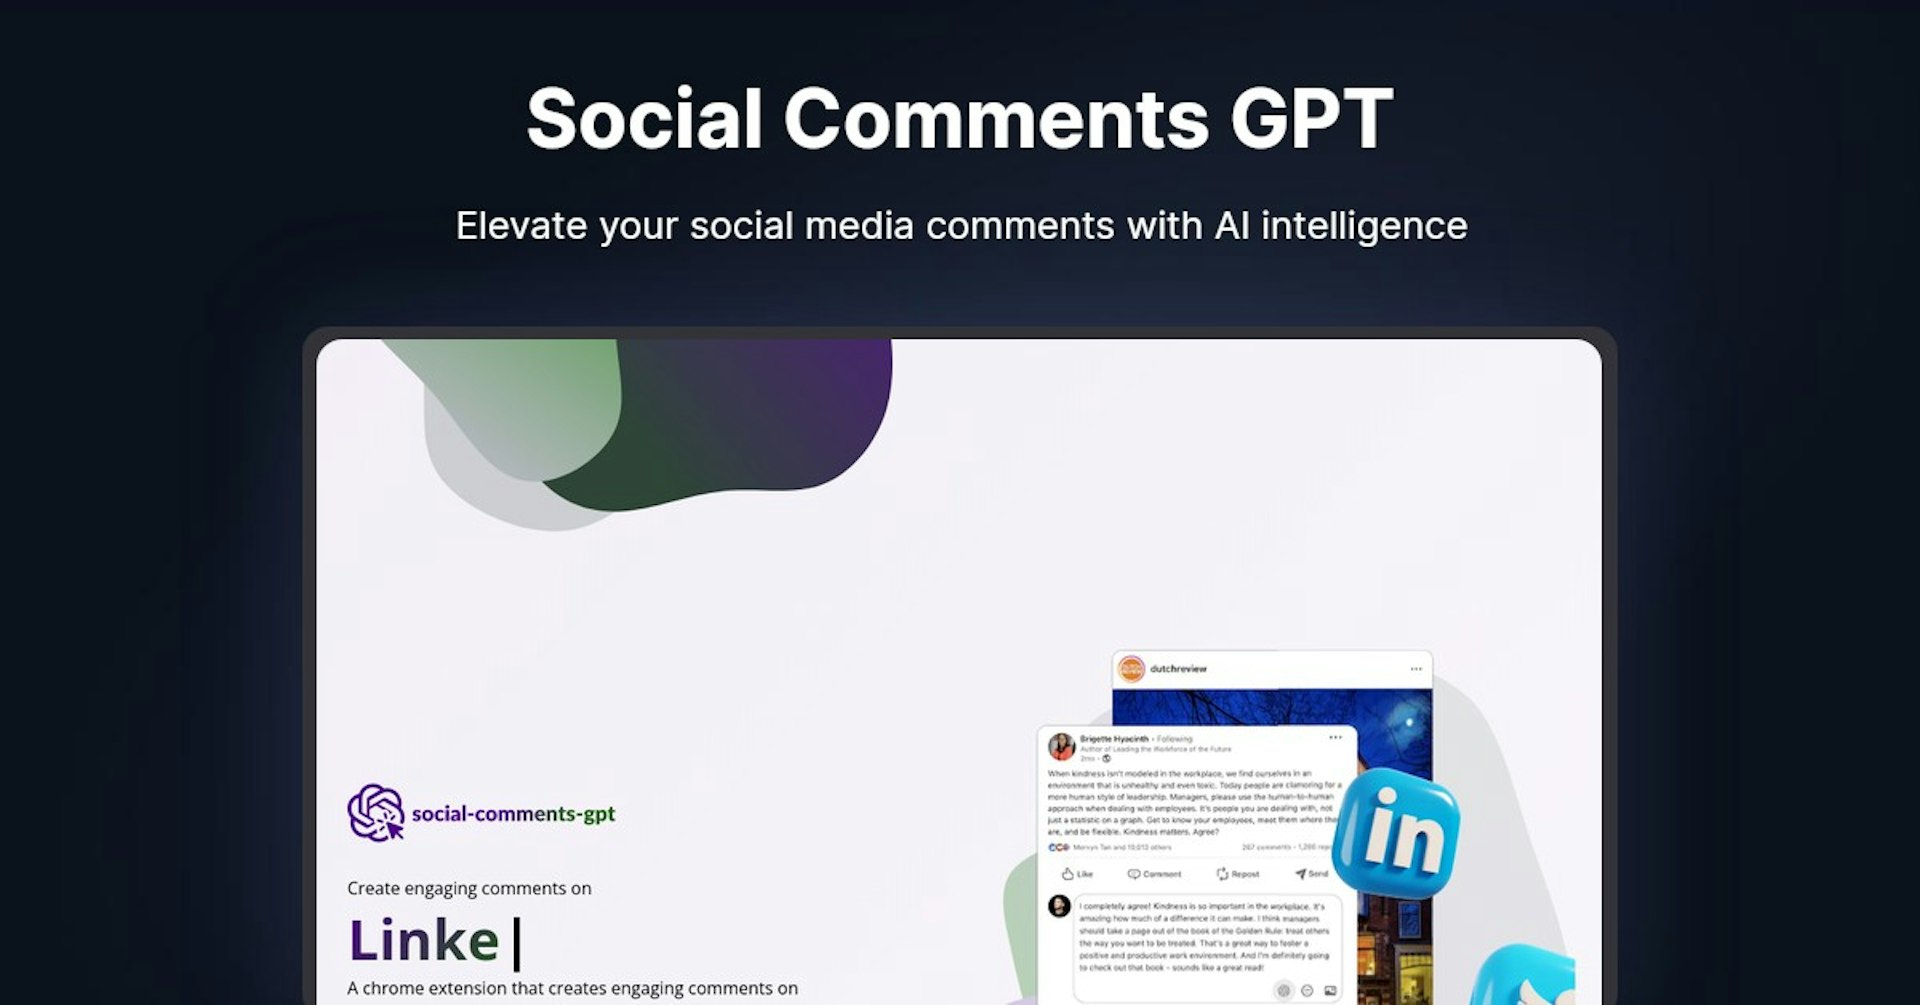 Social Comments GPT